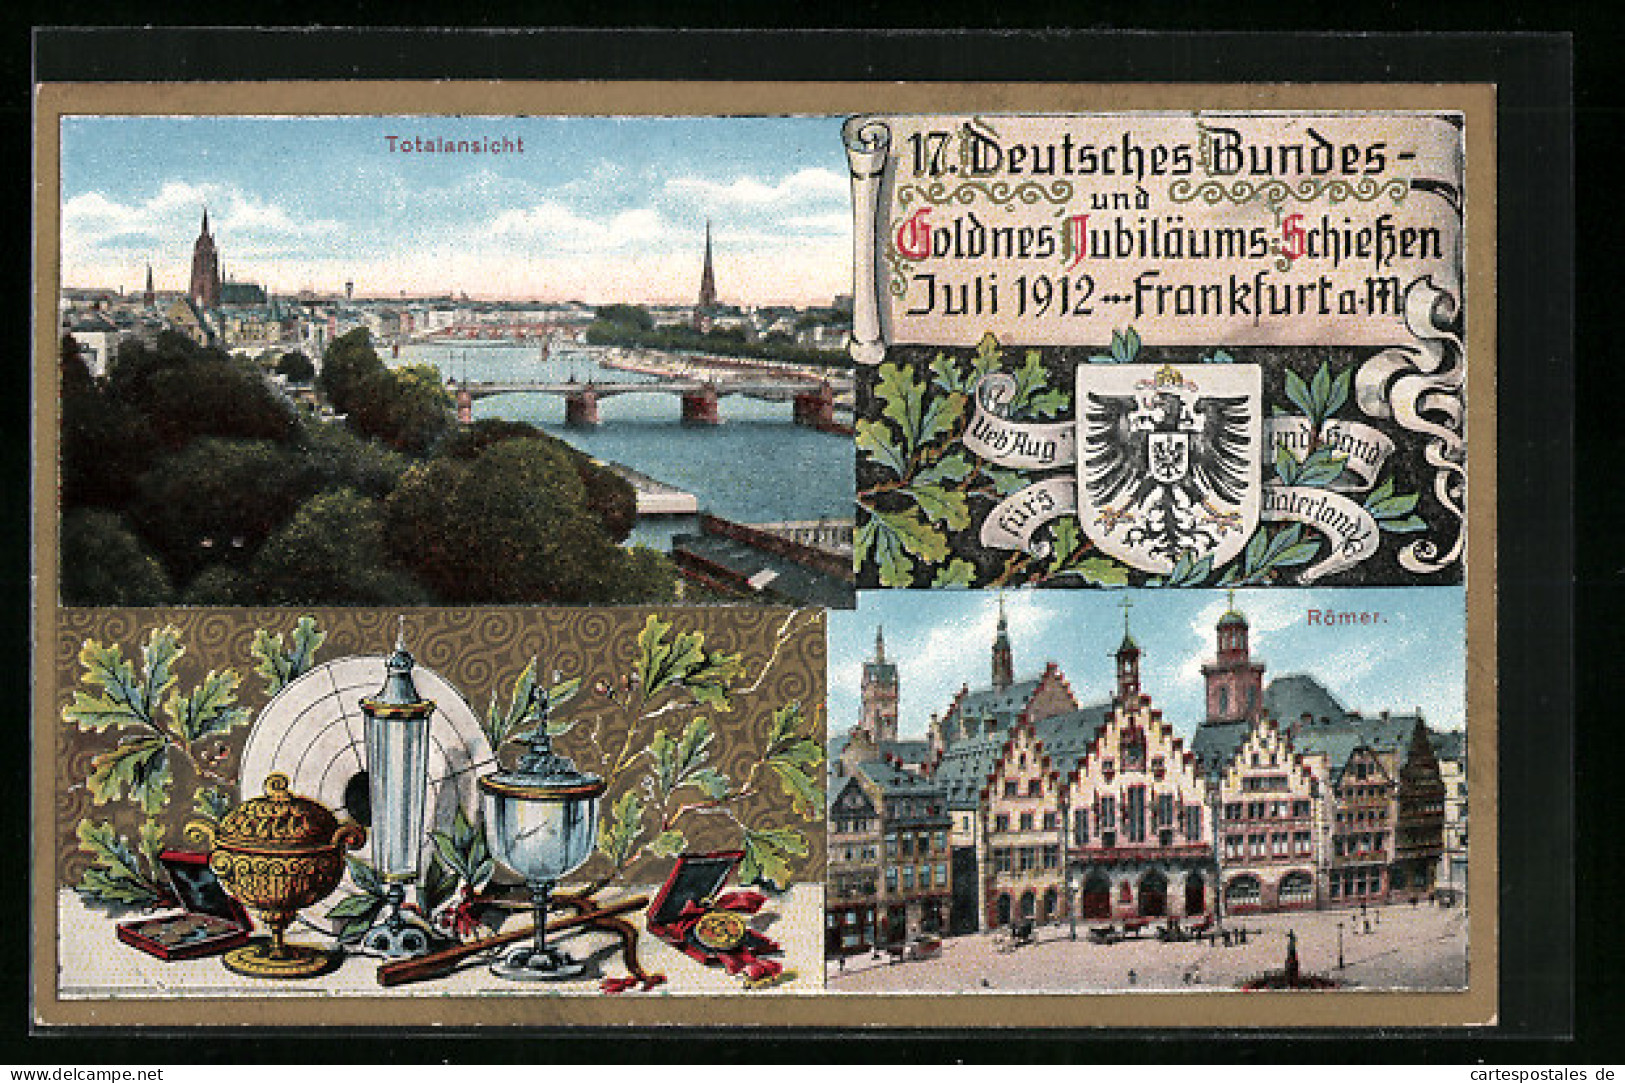 AK Frankfurt, 17. Deutsches Bundesschiessen 1912, Totalansicht D. Ortes, Römer, Wappen, Reichsadler, Schützenverein  - Hunting